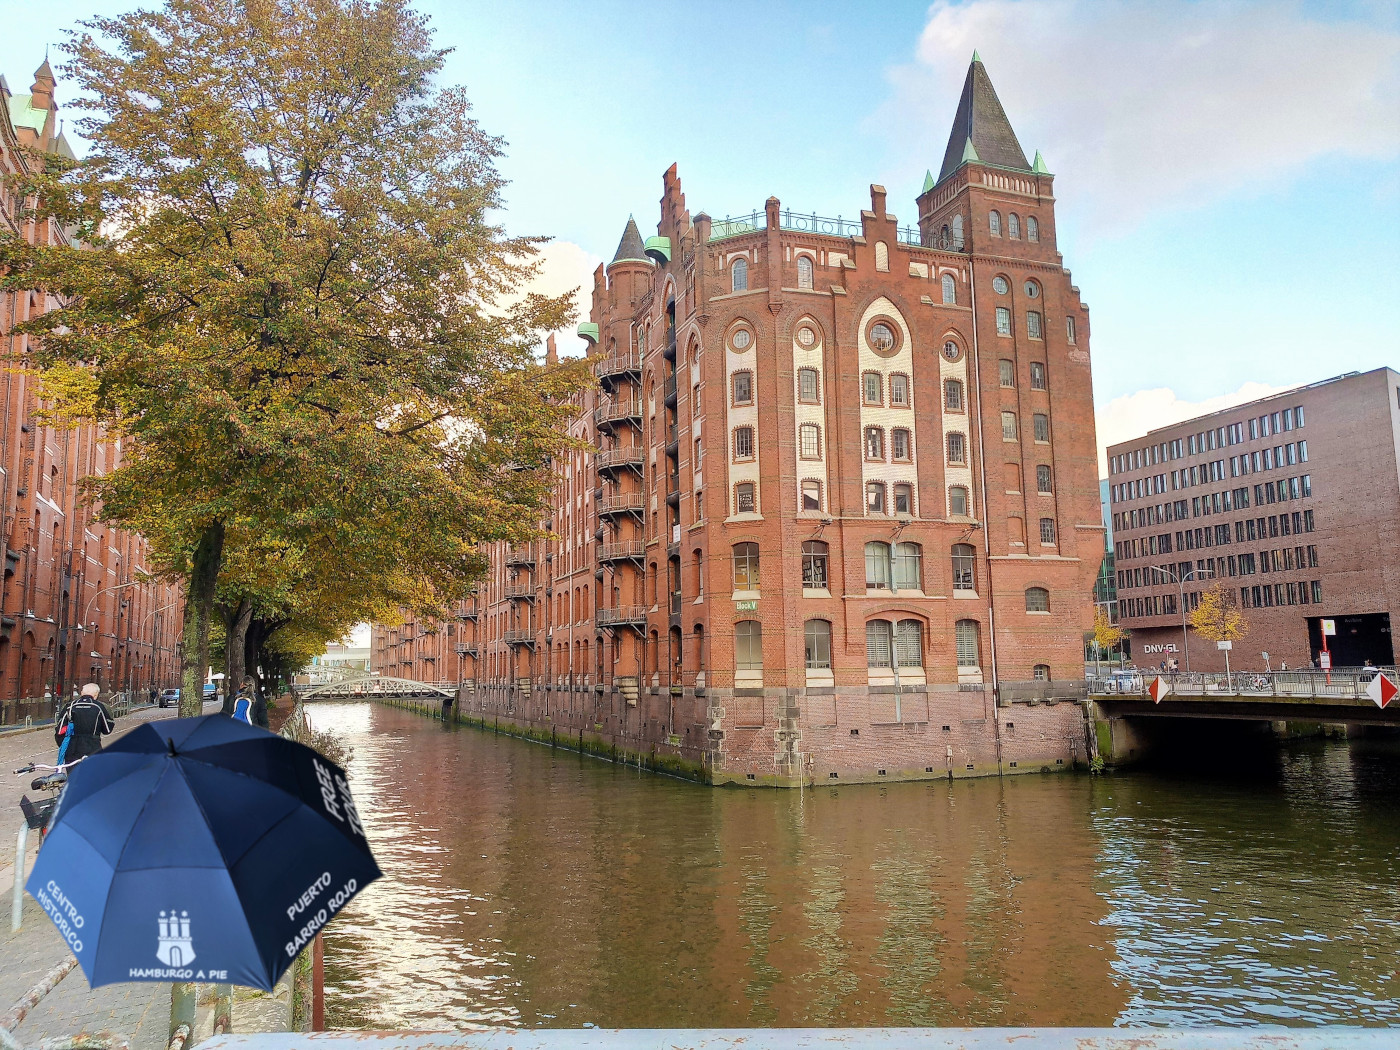 Un canal en la ciudad de los almacenes (Speicherstadt), Hamburgo